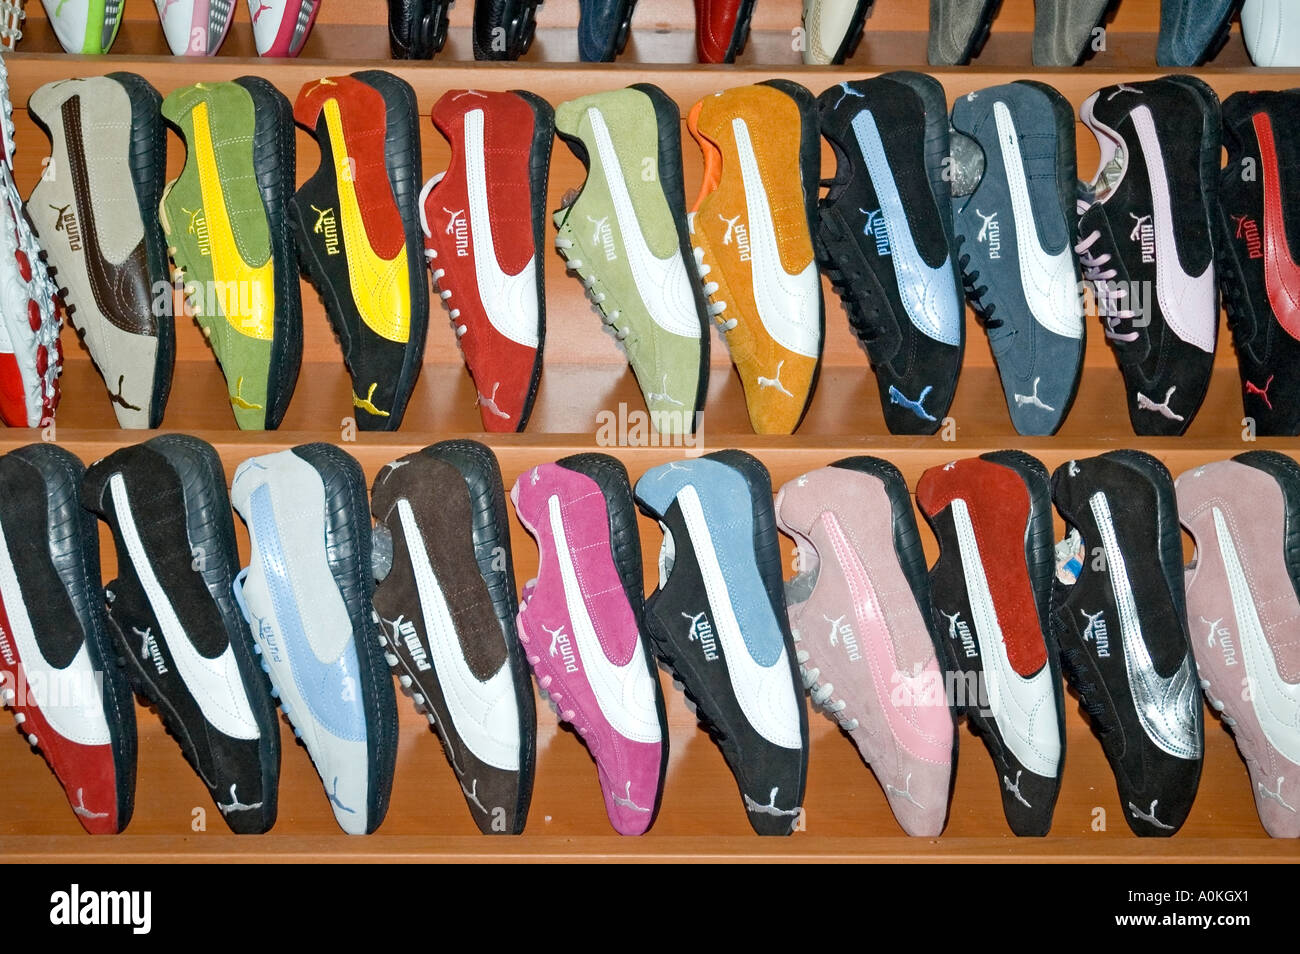 Puma badged scarpe da running, formatori, sneakers, forse falso, per la vendita nel Grand Bazaar, Istanbul, Turchia. DSC_7055 Foto Stock